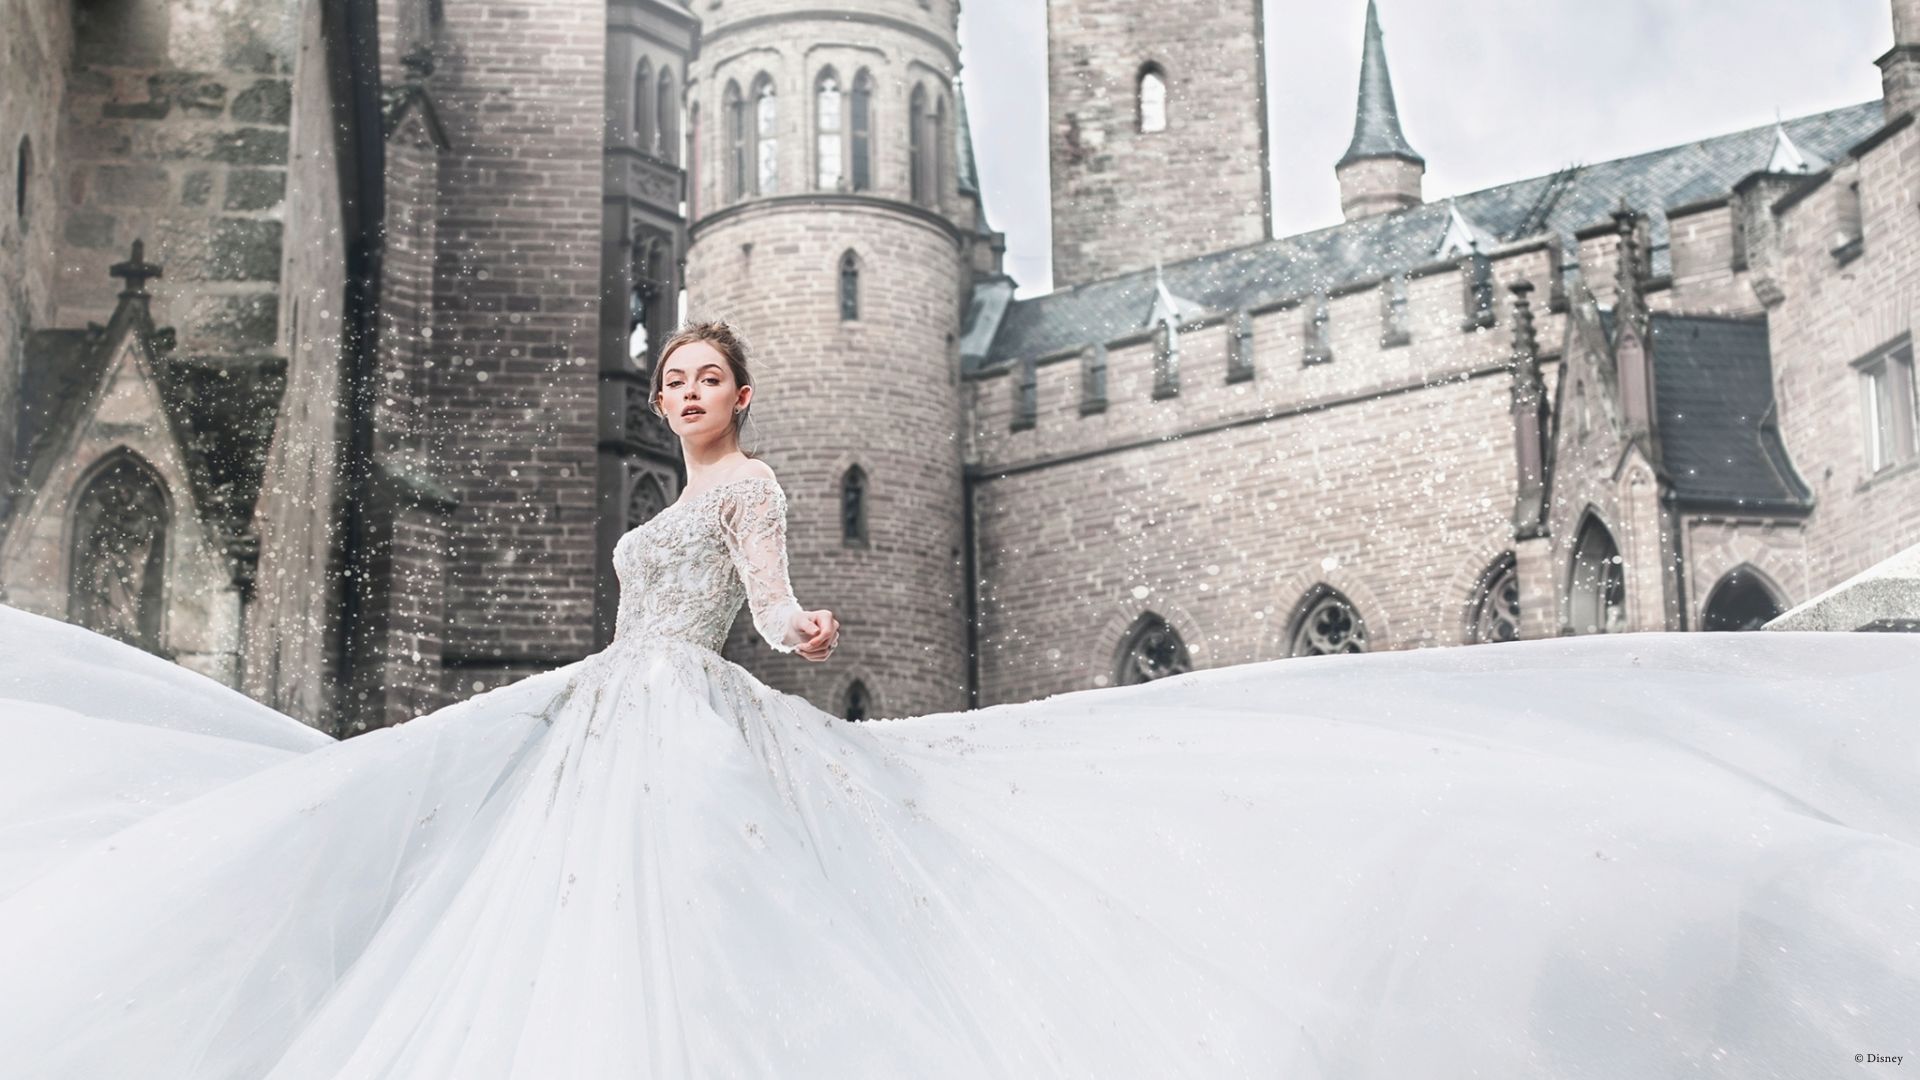 Cinderella by Allure Bridals | Style: DP253 (só disponível nas lojas Kleinfeld) | Créditos: Disney